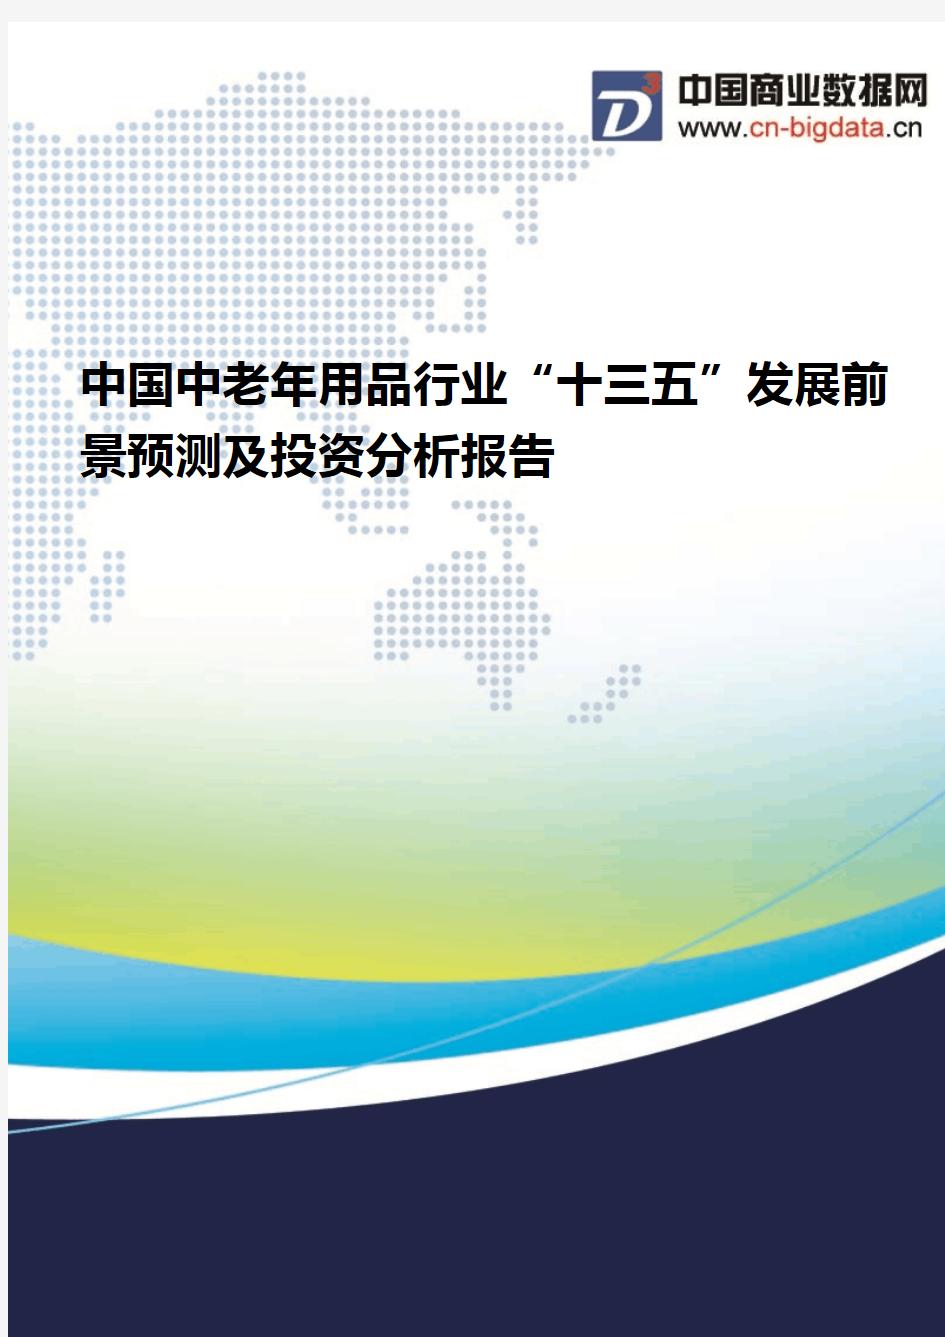 (2017版目录)中国中老年用品行业“十三五”发展前景预测及投资分析报告